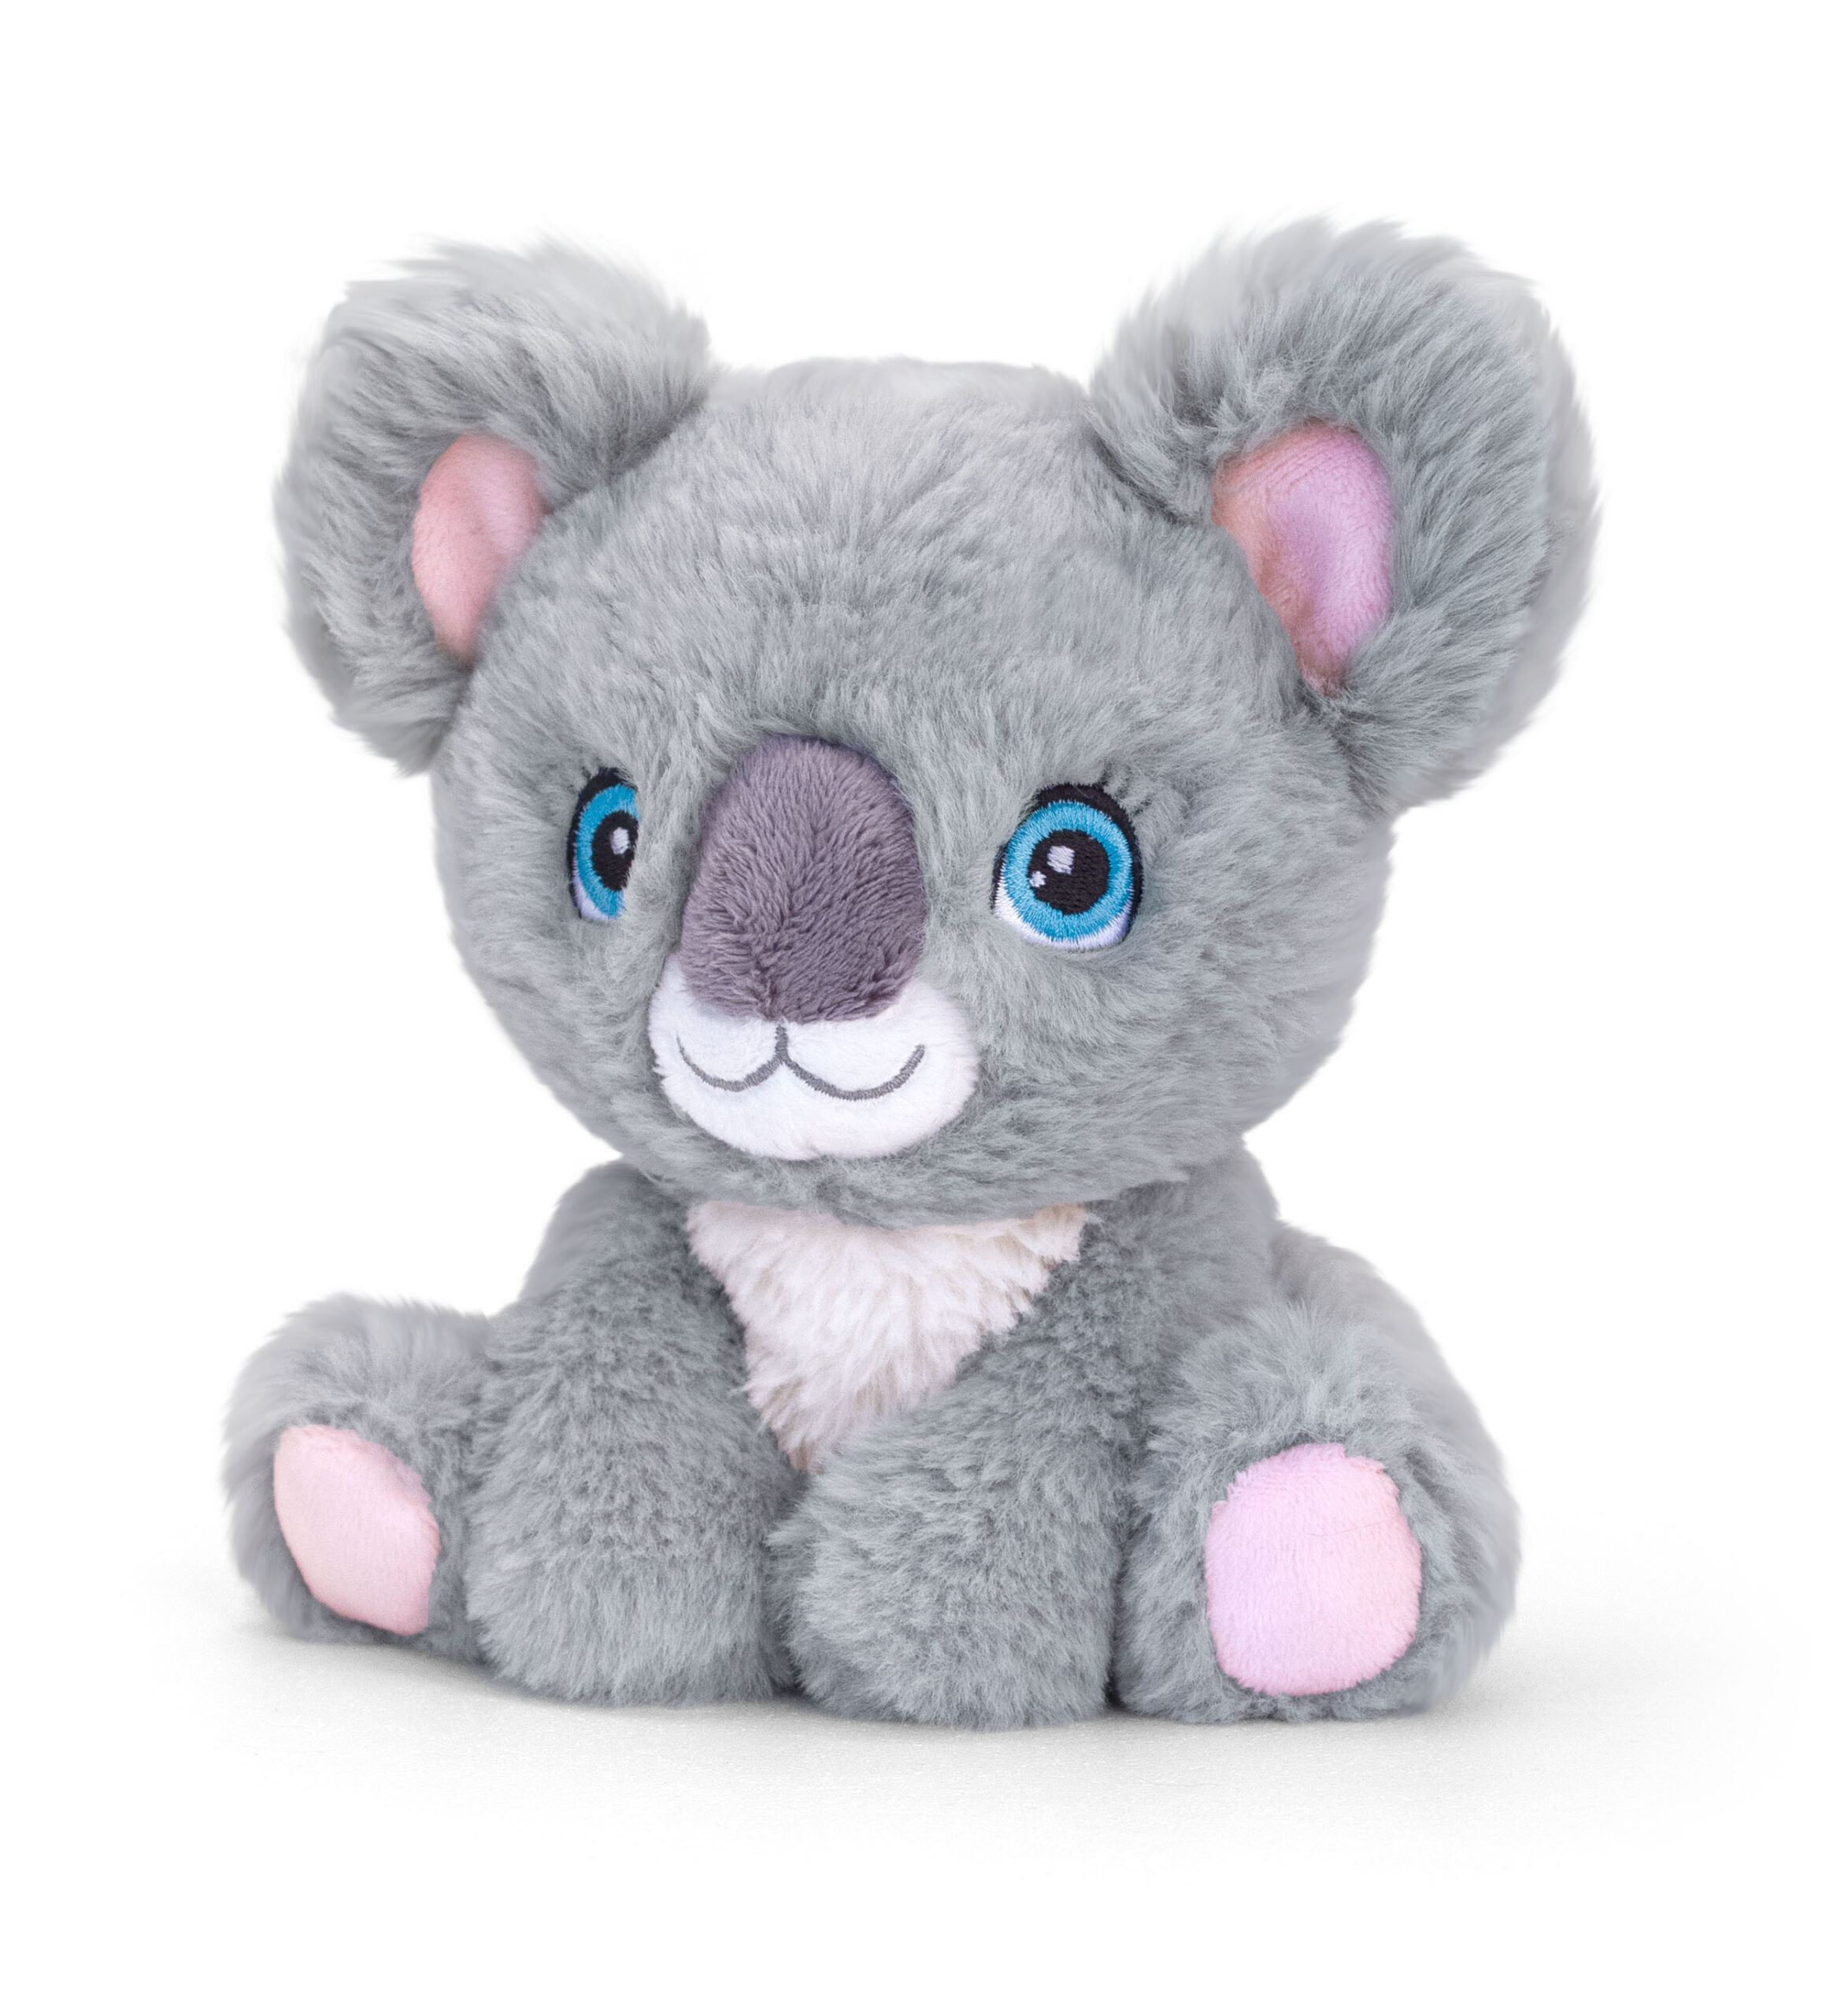 16cm Keeleco Adoptable World Koala